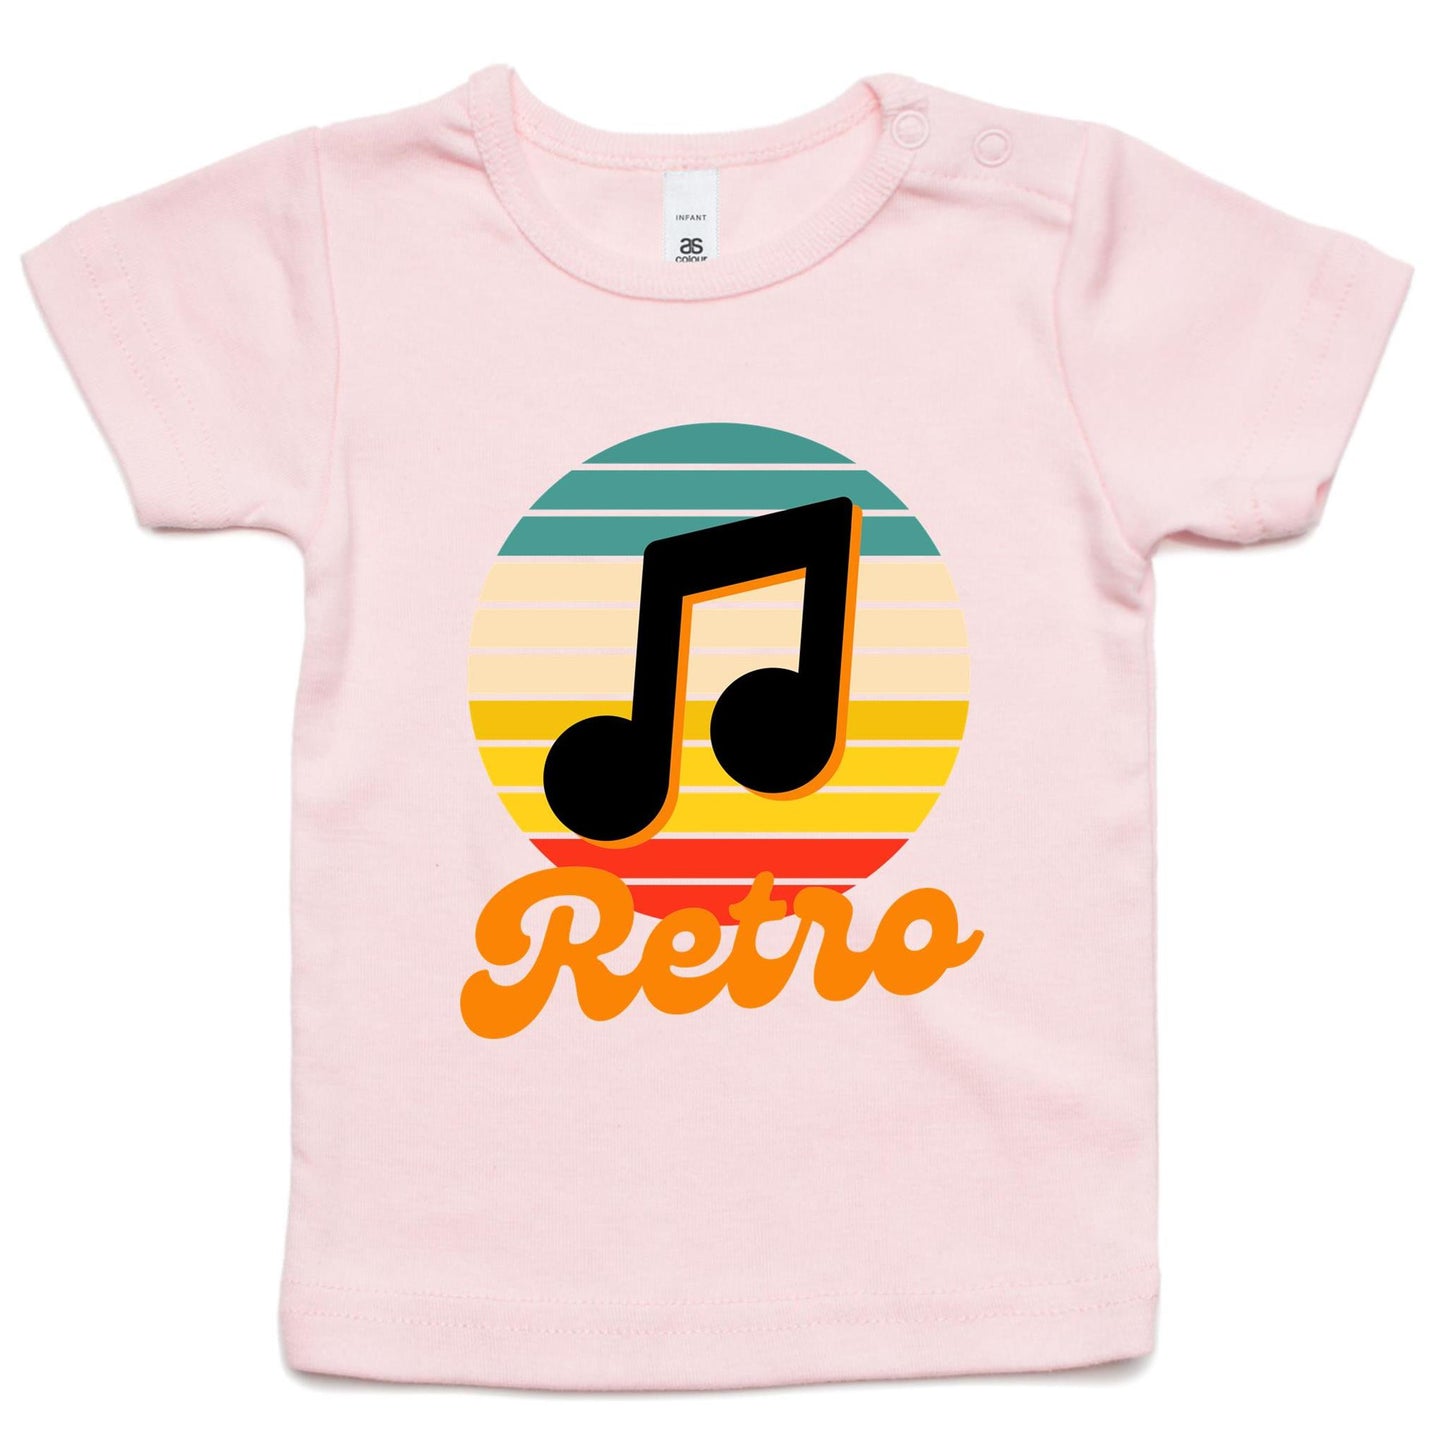 Retro Baby T-shirt Pink Baby T-shirt Retro